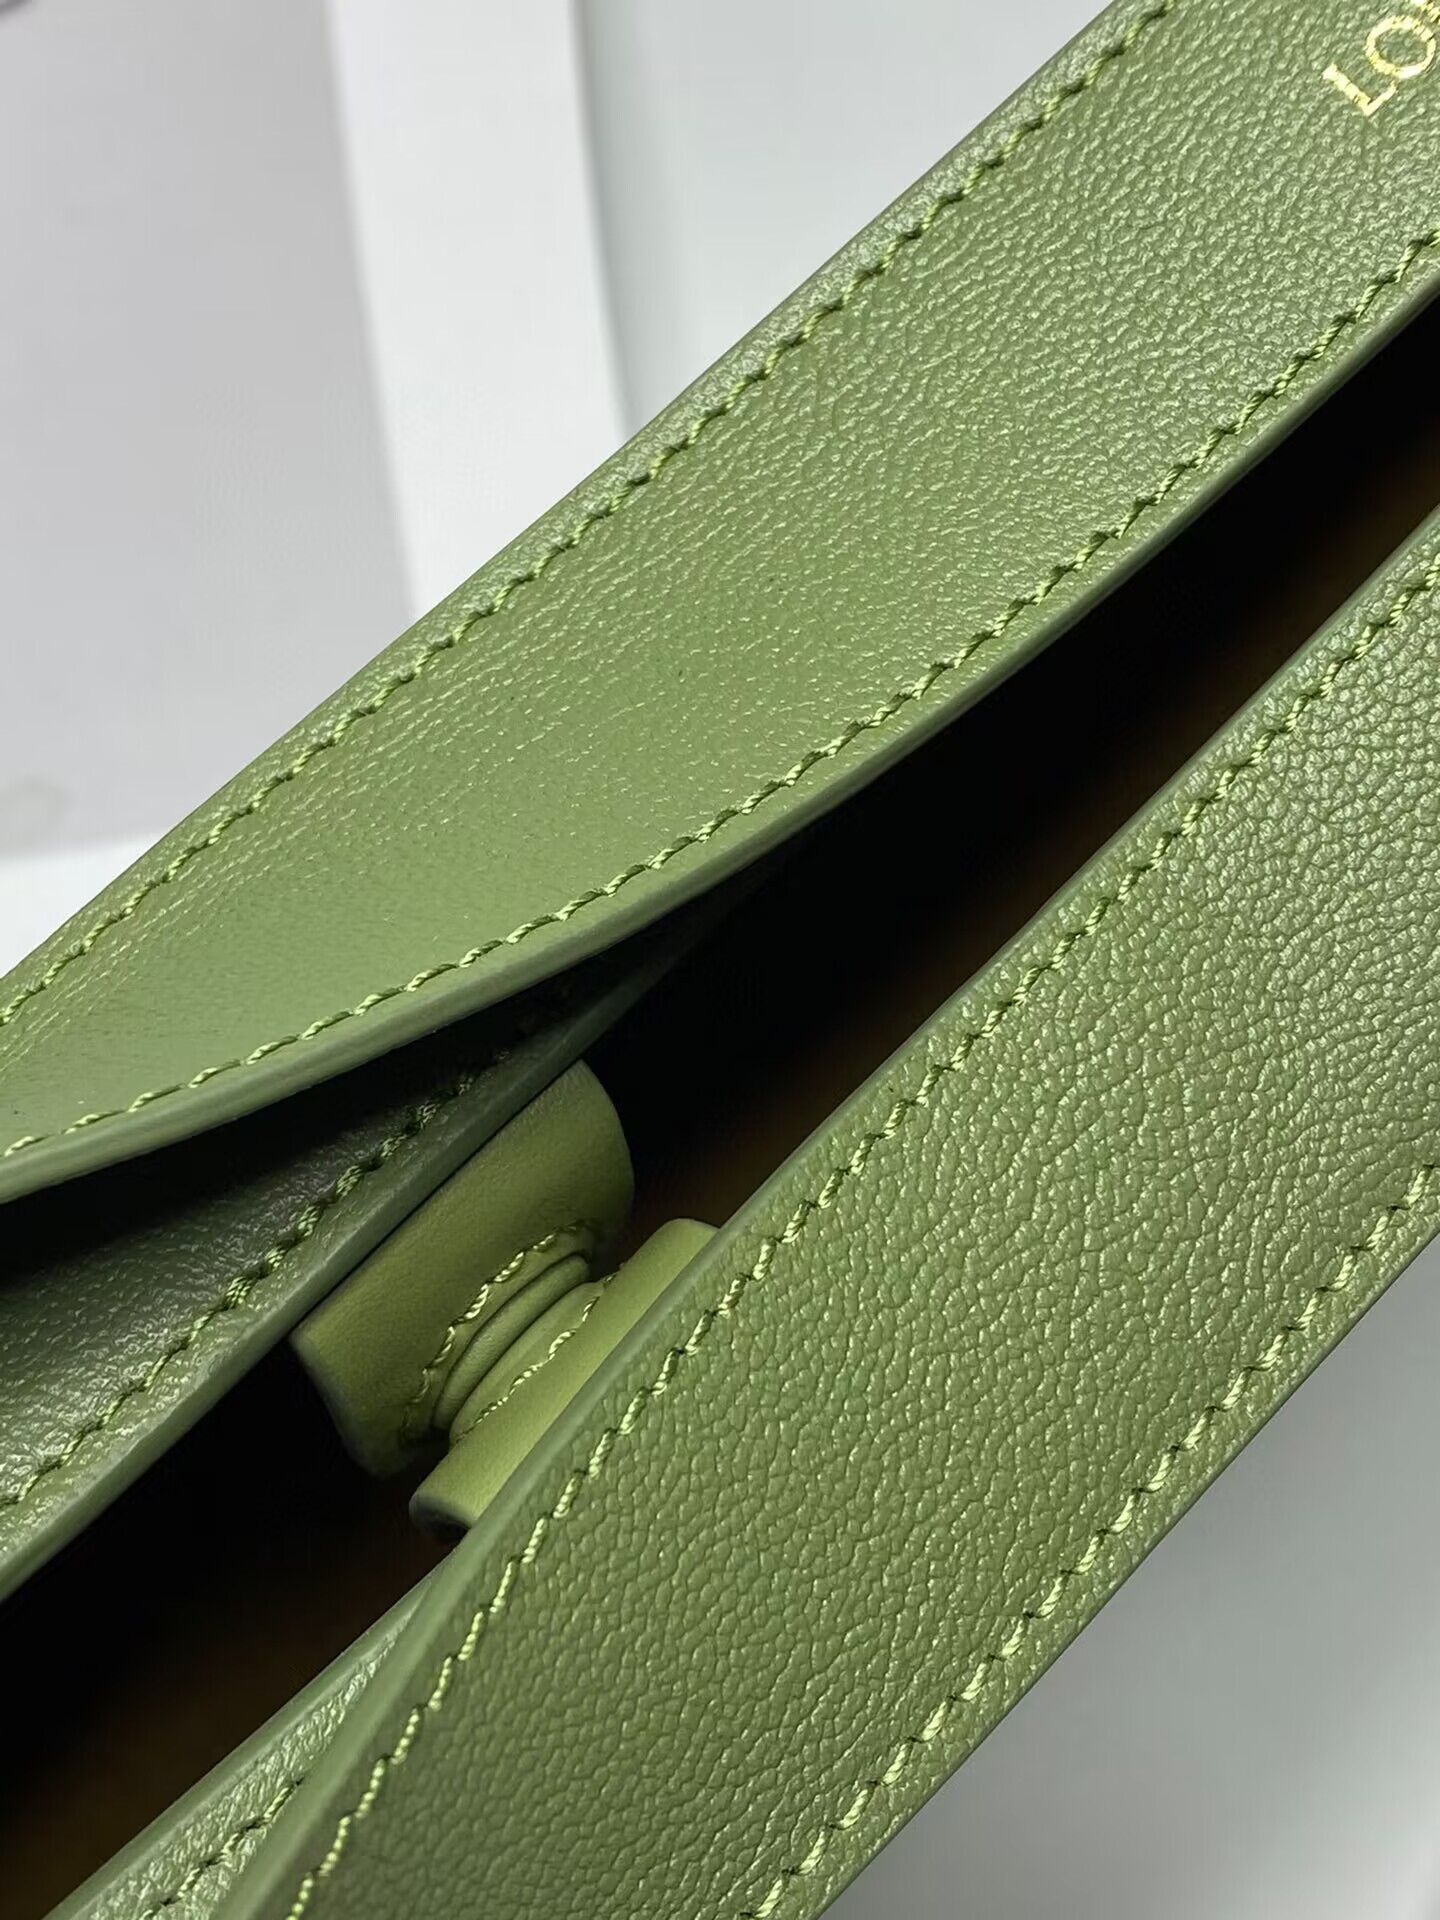 Loewe Original Shoulder Handbag LE30210 Green